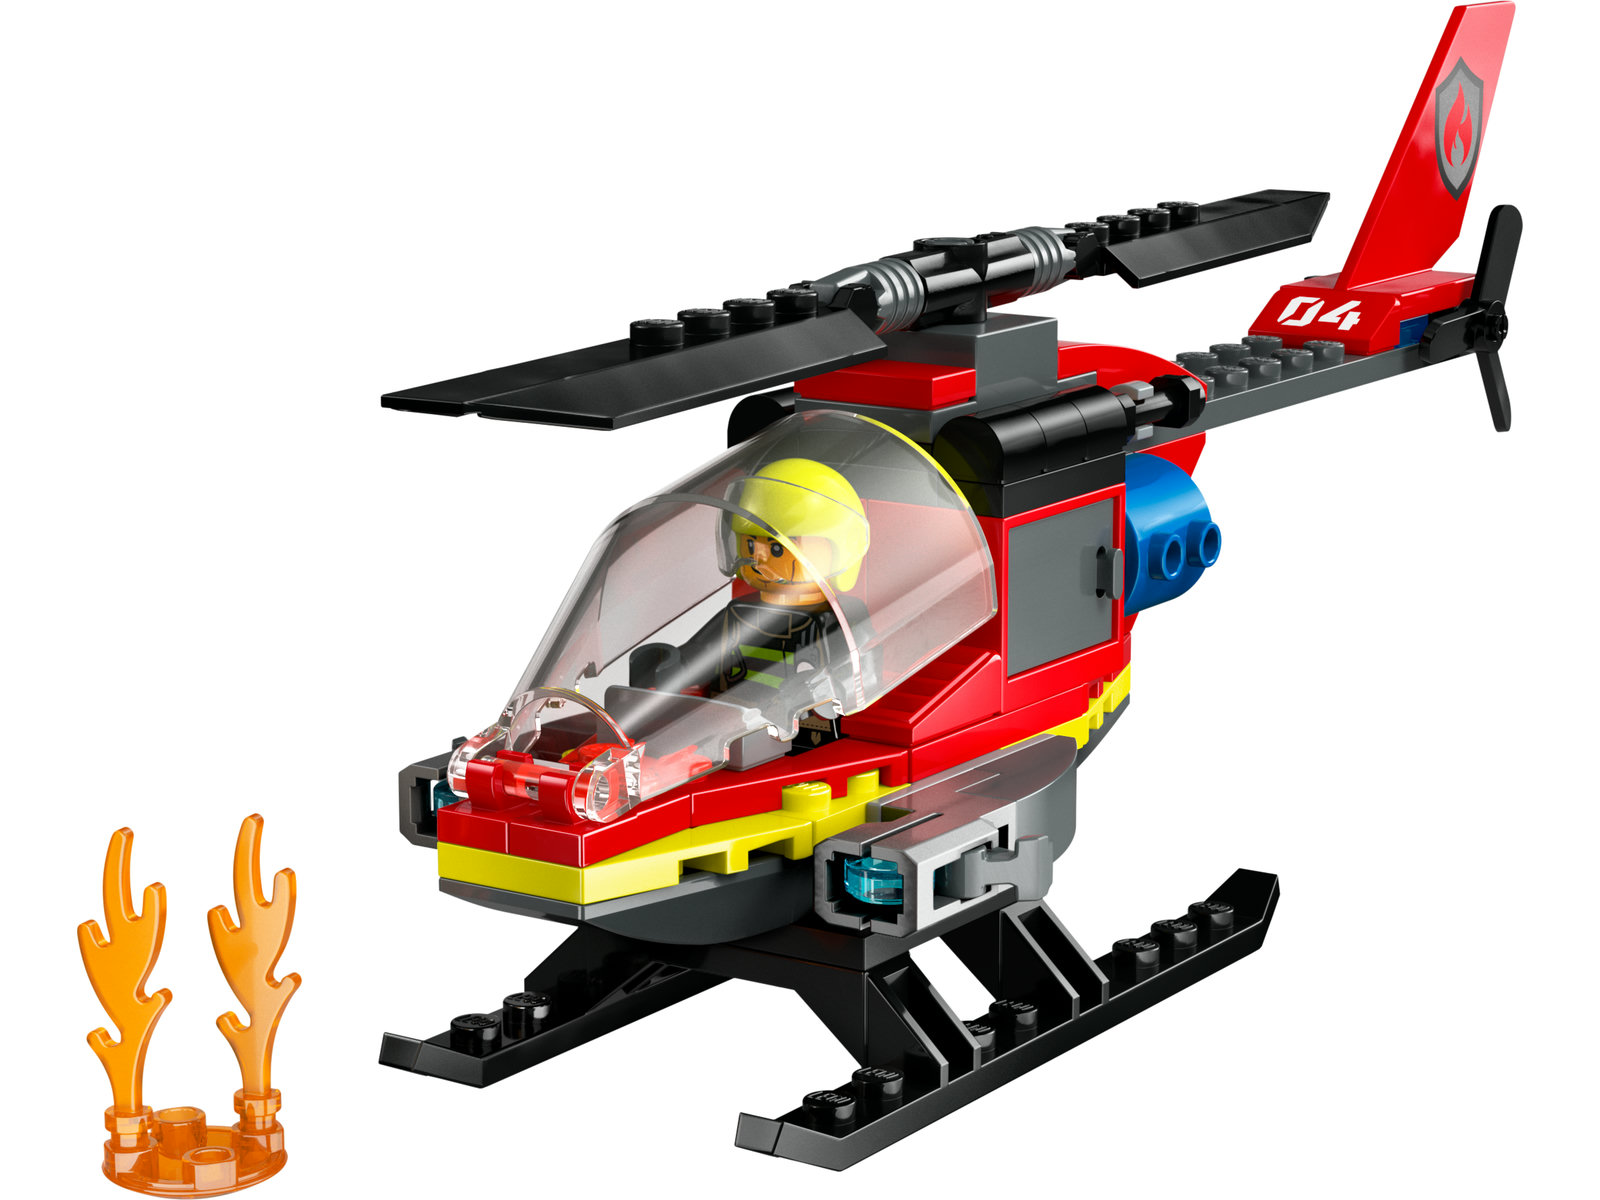 LEGO® City 60411 - Feuerwehrhubschrauber